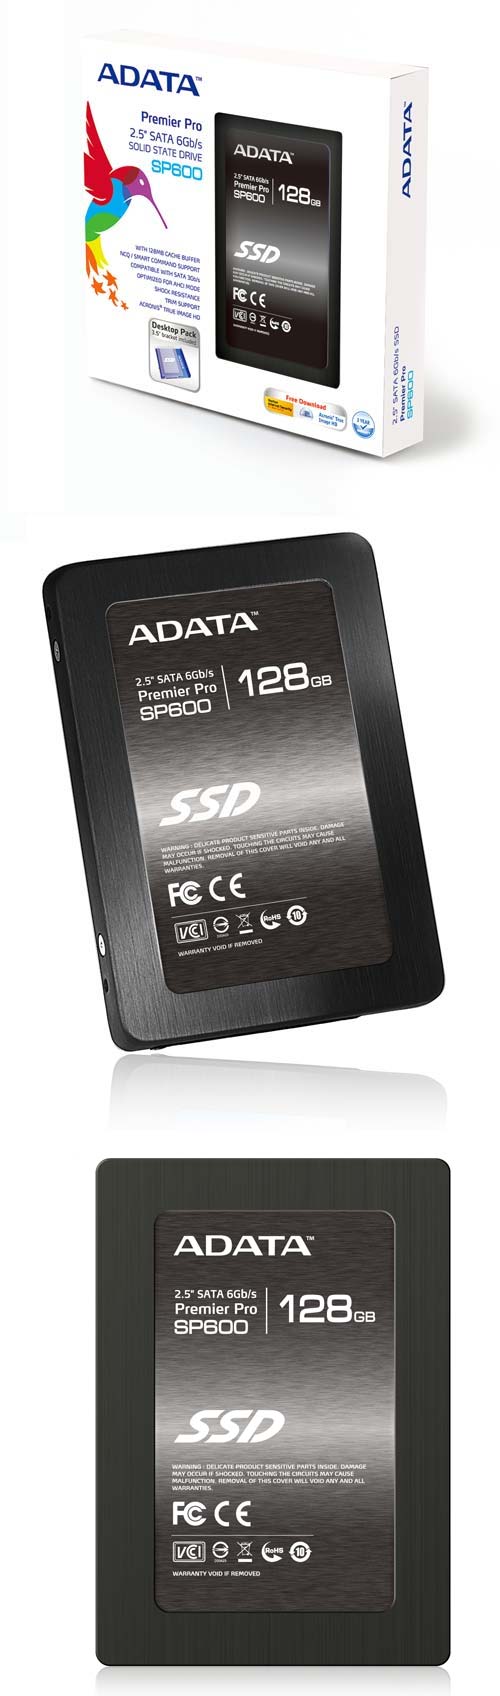 ADATA SP600 - бюджетные SATA 6Гб/с накопители